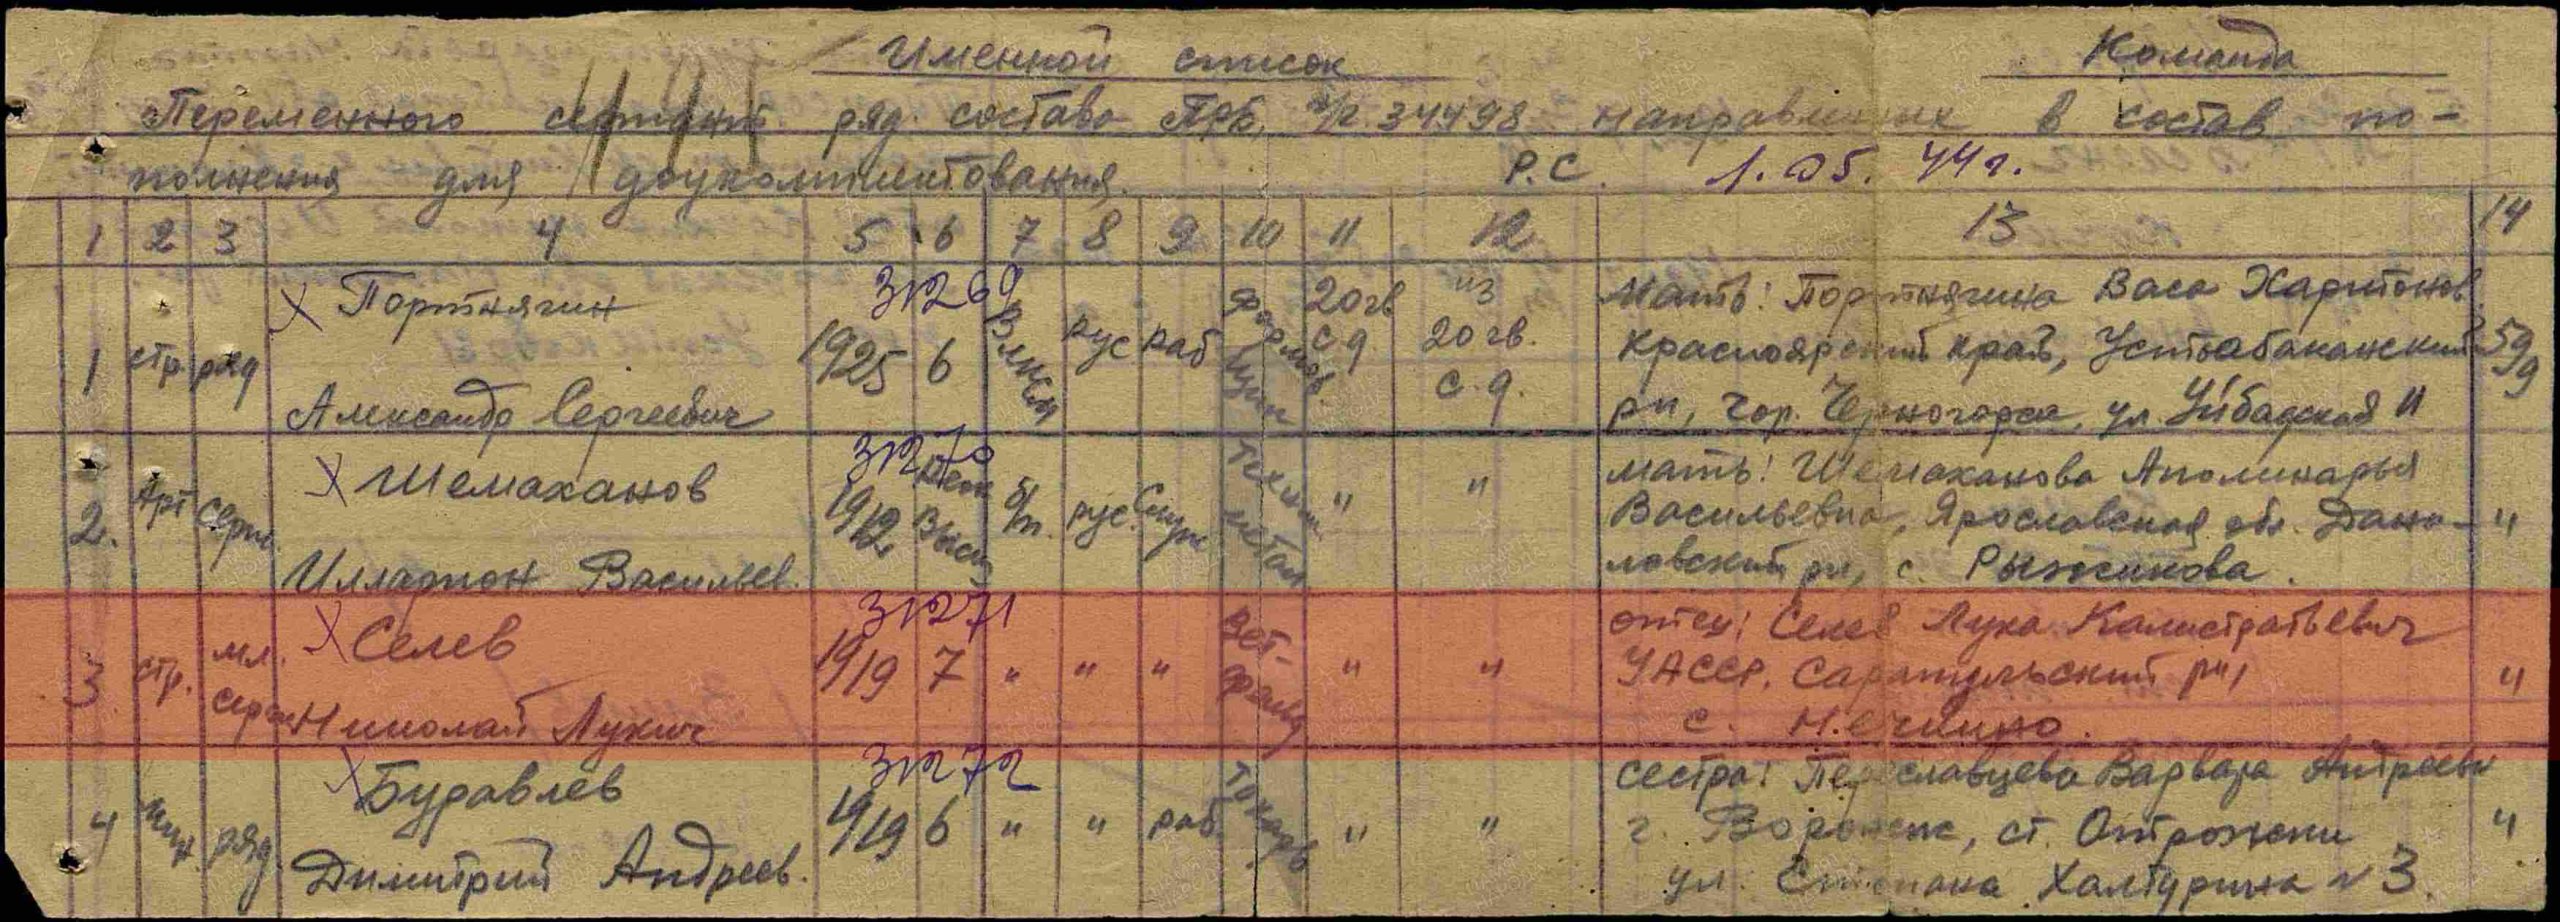 Лист документа военно-пересыльного пункта, 01.05.1944